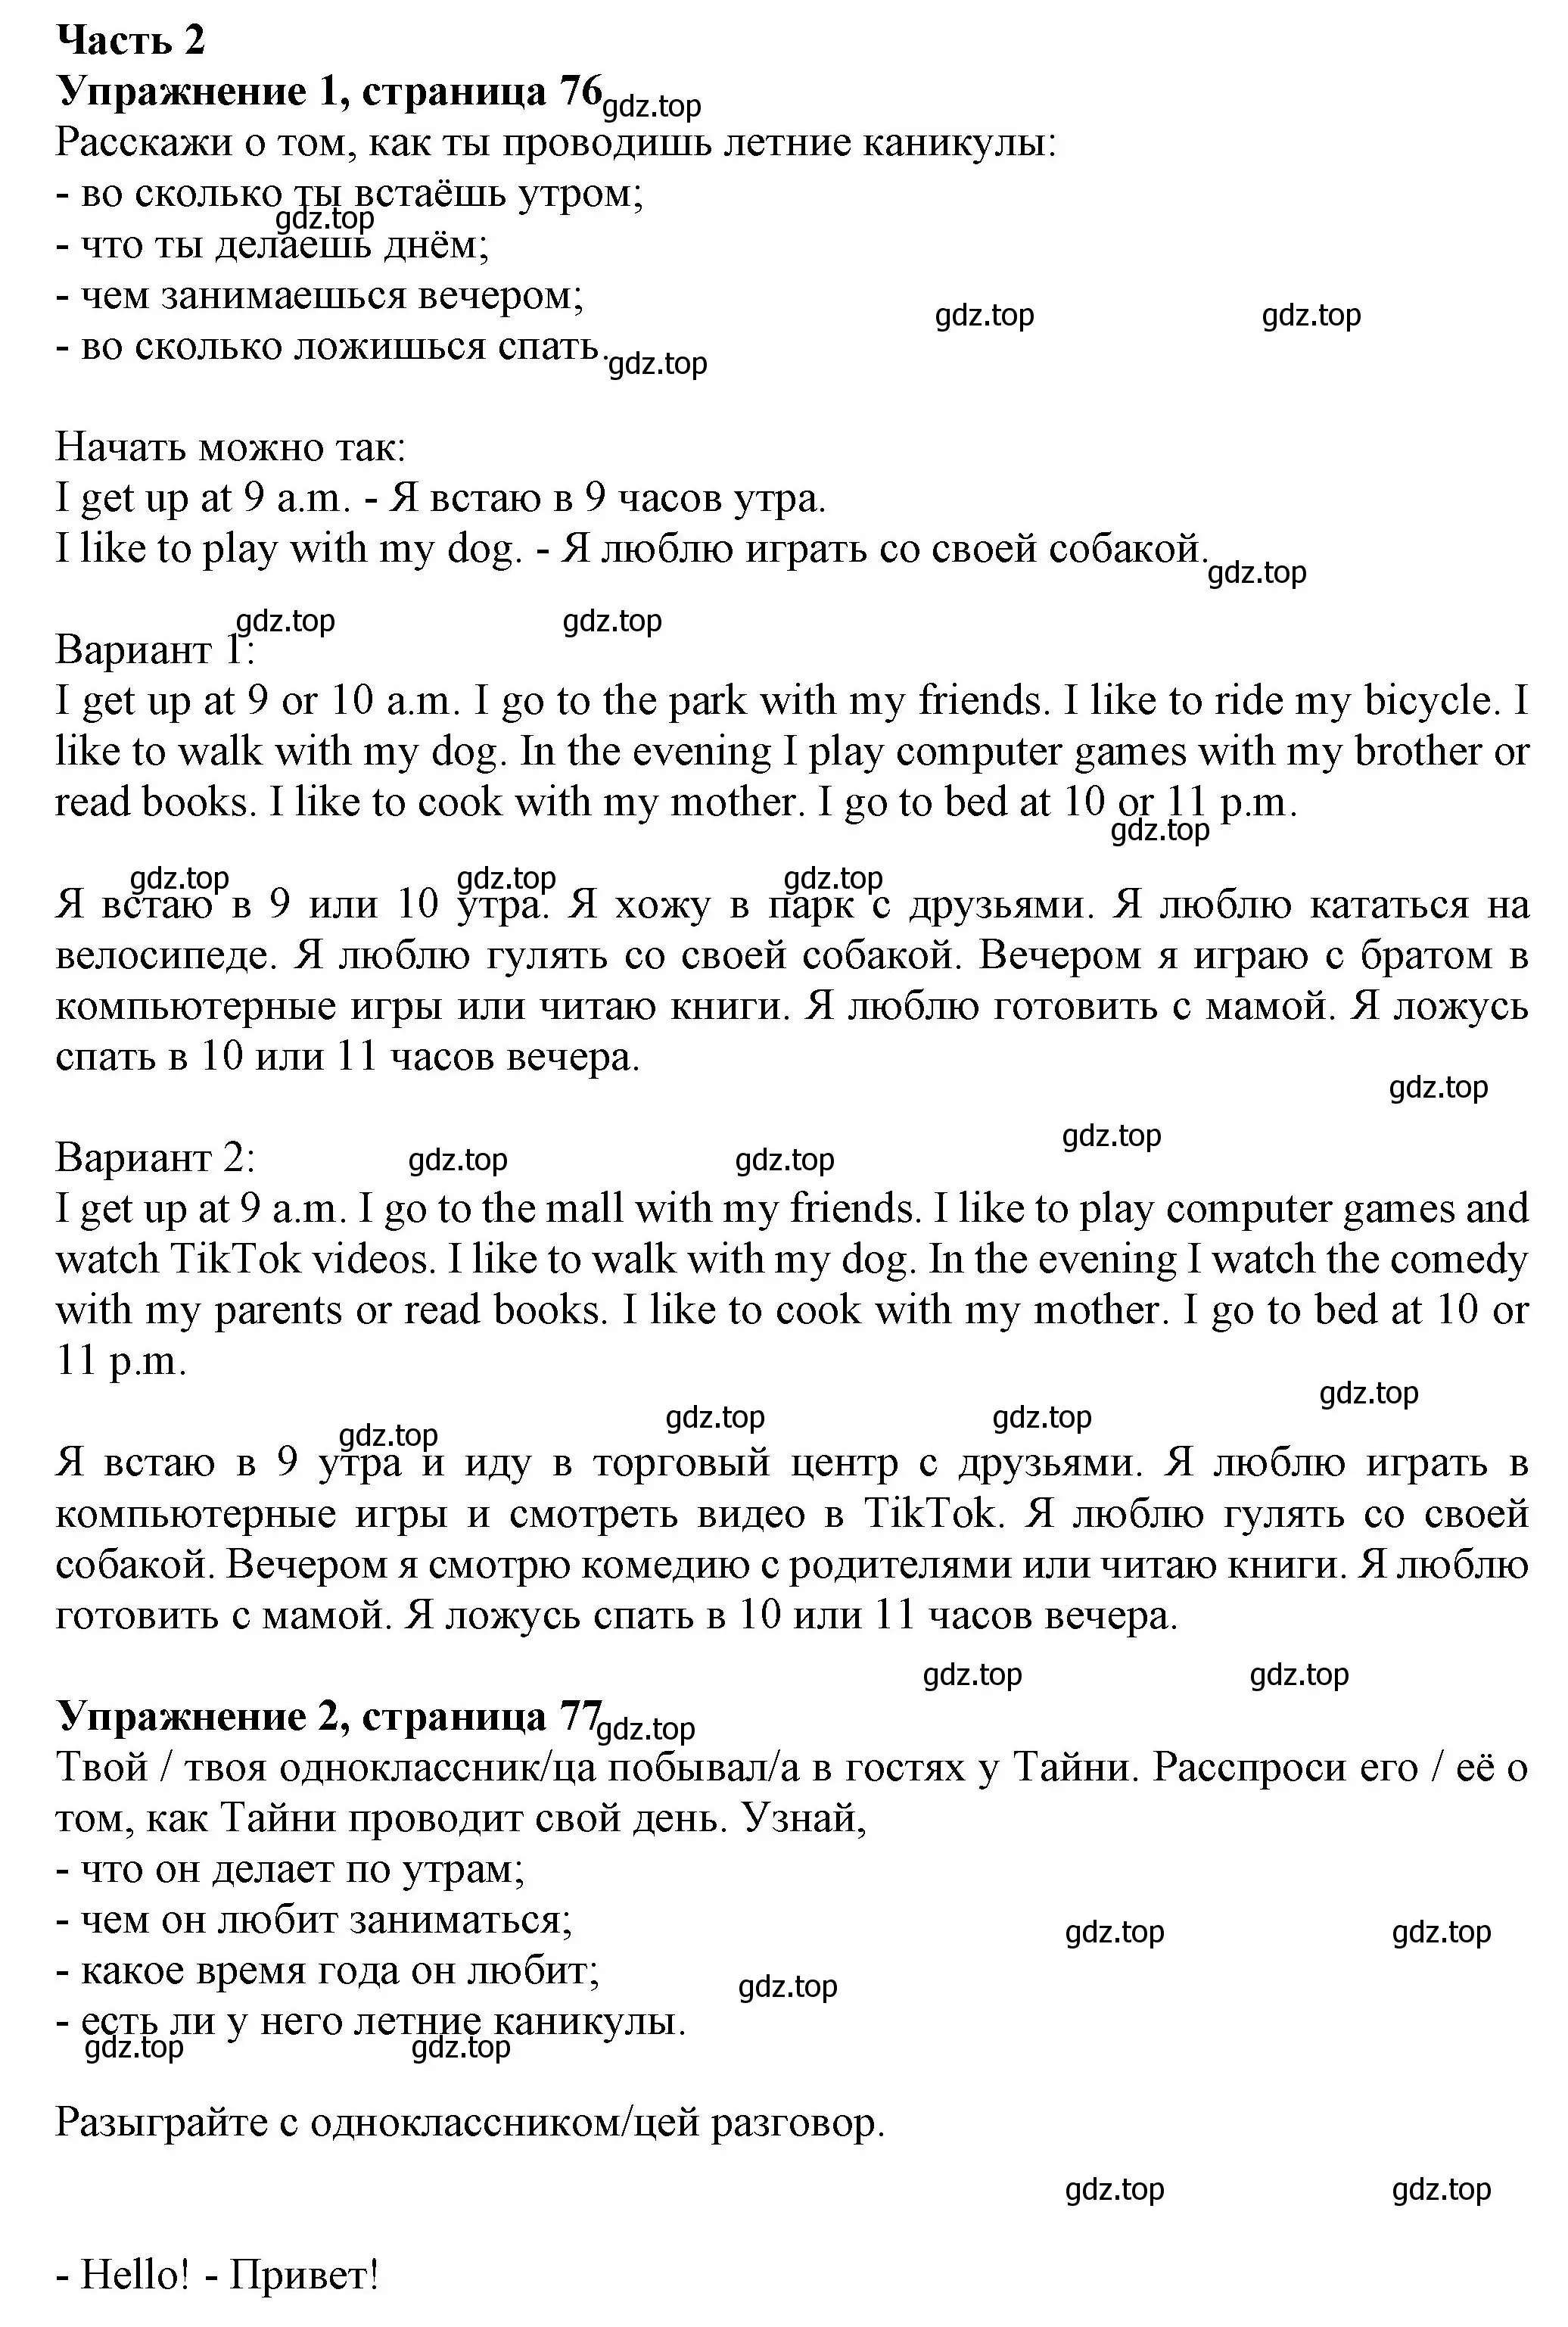 Решение номер 2 (страница 76) гдз по английскому языку 3 класс Биболетова, Денисенко, рабочая тетрадь